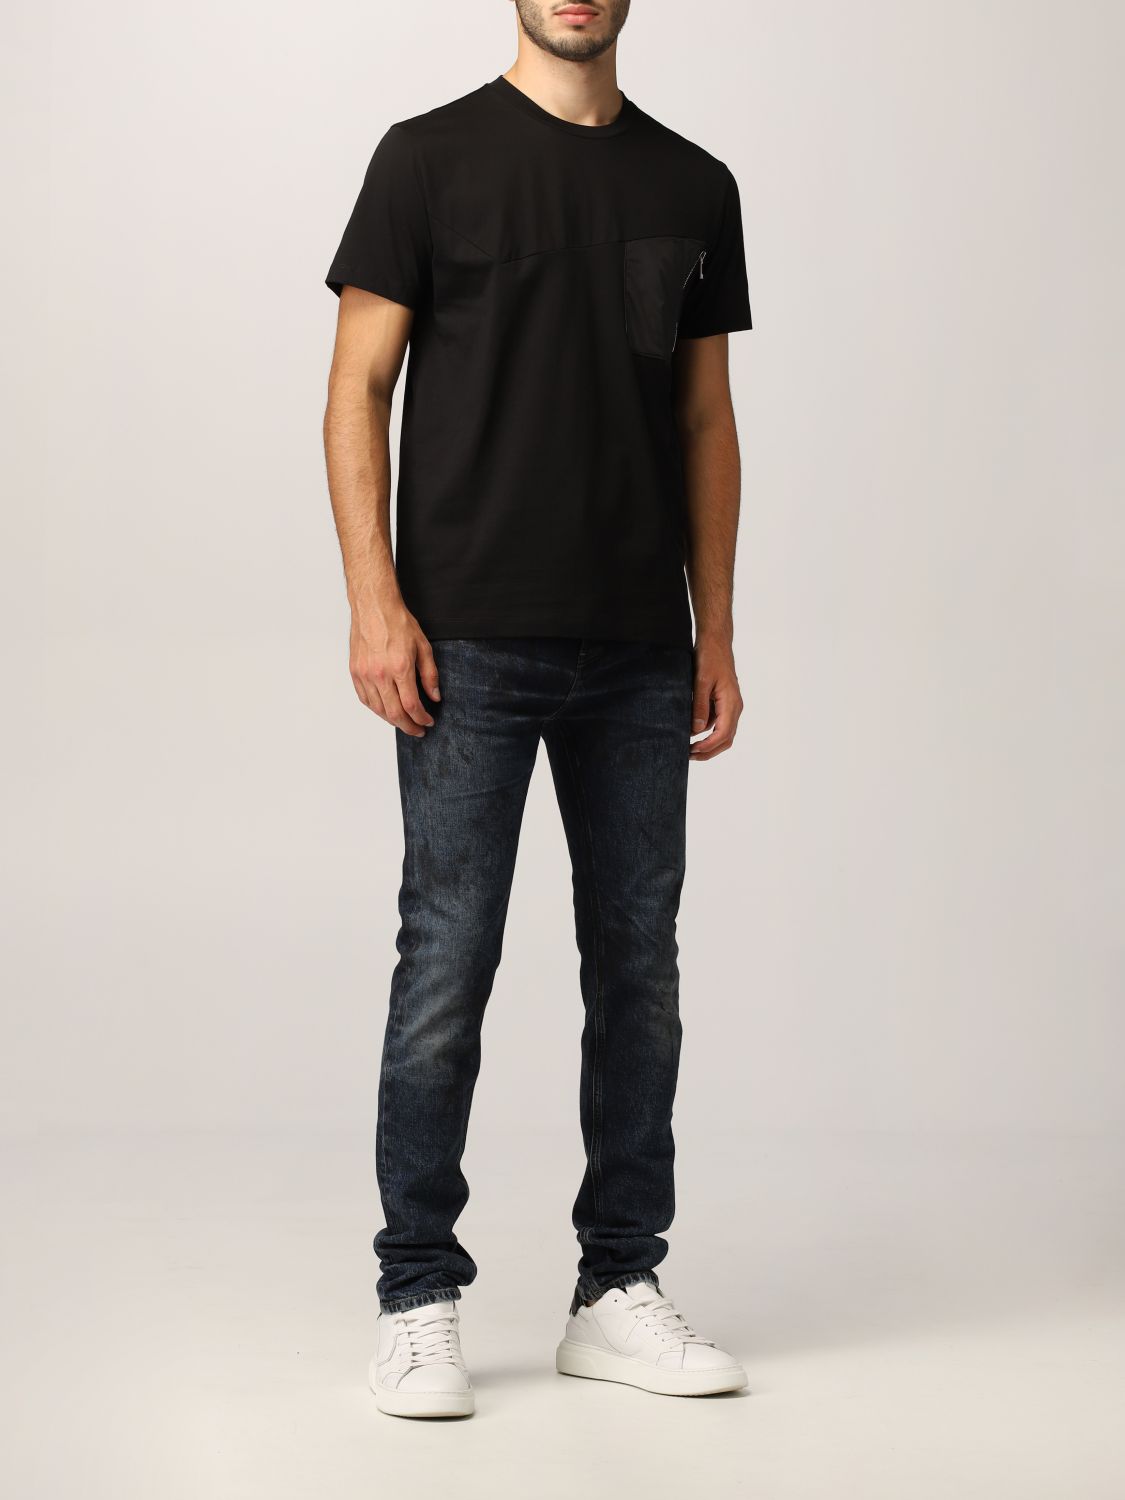 Les Hommes Outlet: t-shirt for man - Black | Les Hommes t-shirt ...